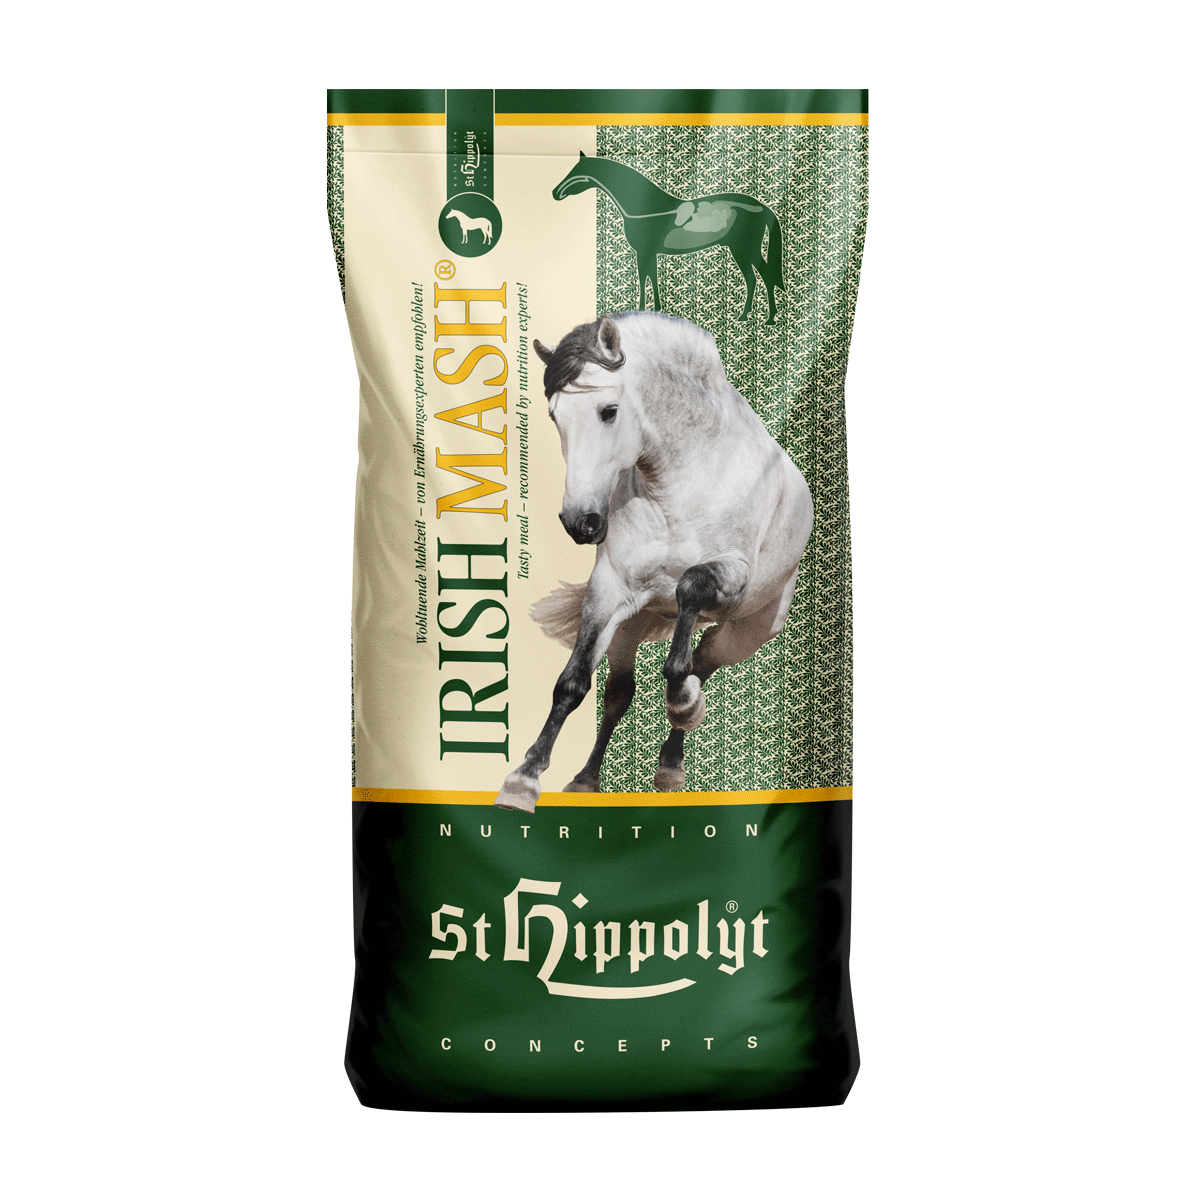 St.Hippolyt - Irish Mash® - Aktiviert Stoffwechsel und Verdauung der Pferde